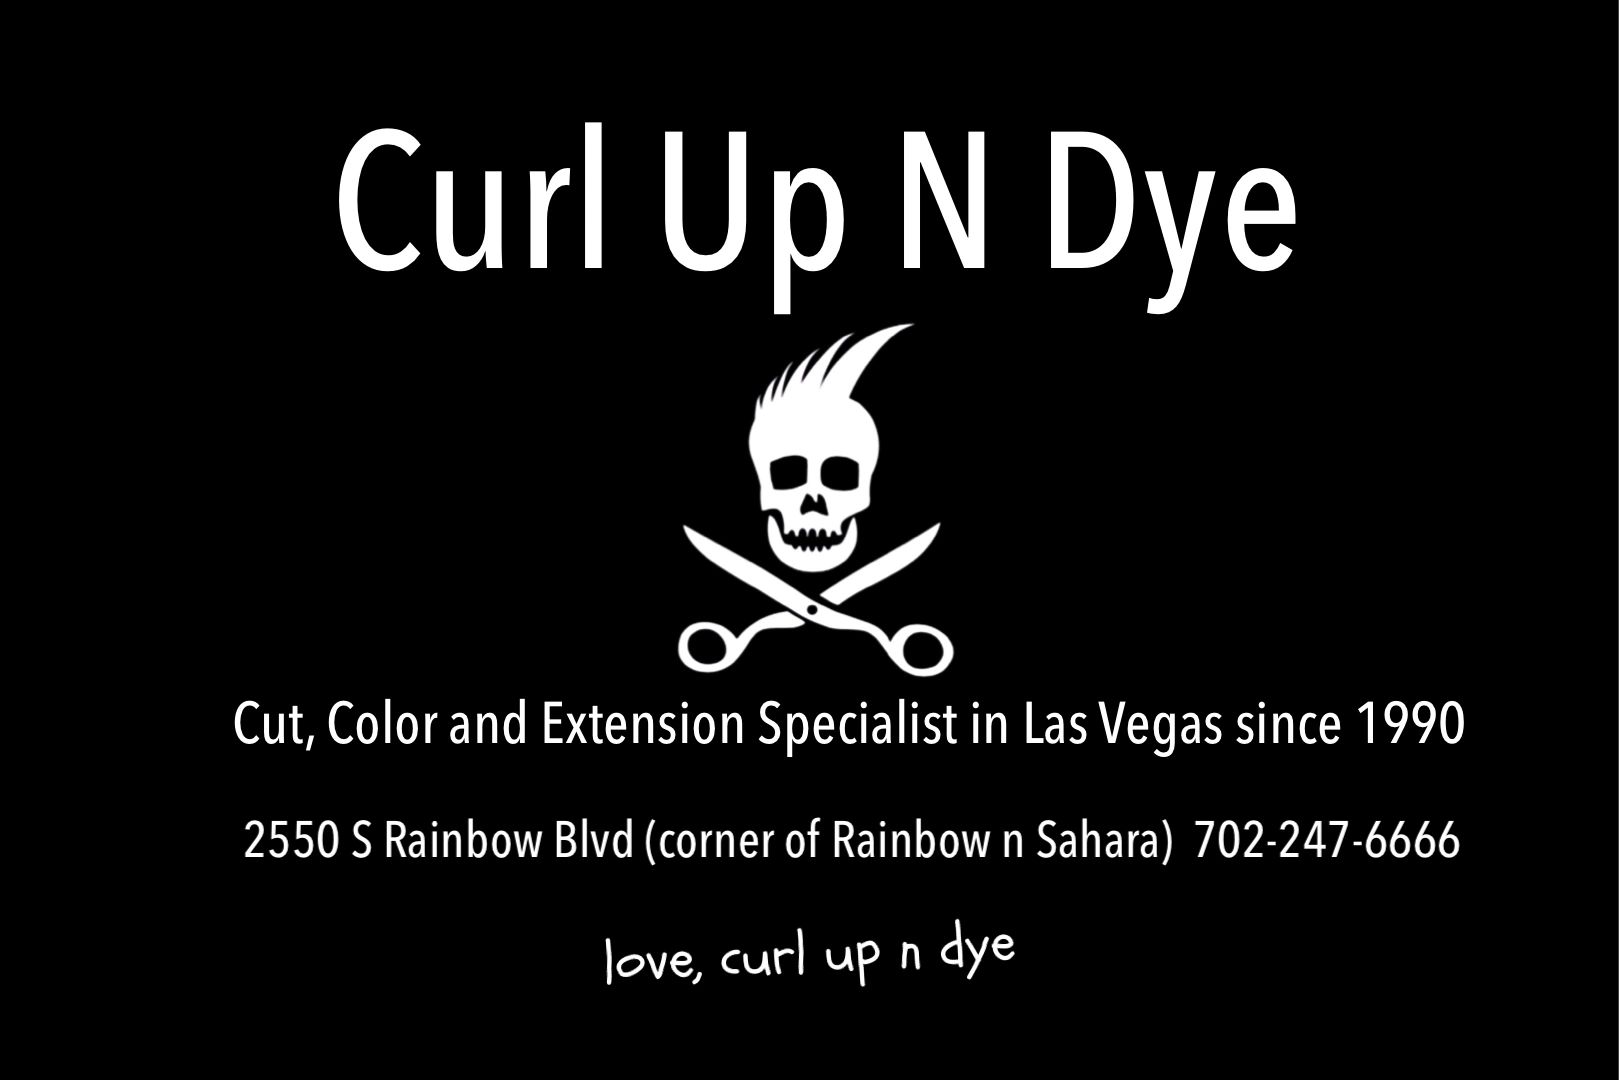 Las Vegas Curl Up N Dye hair salon logo 